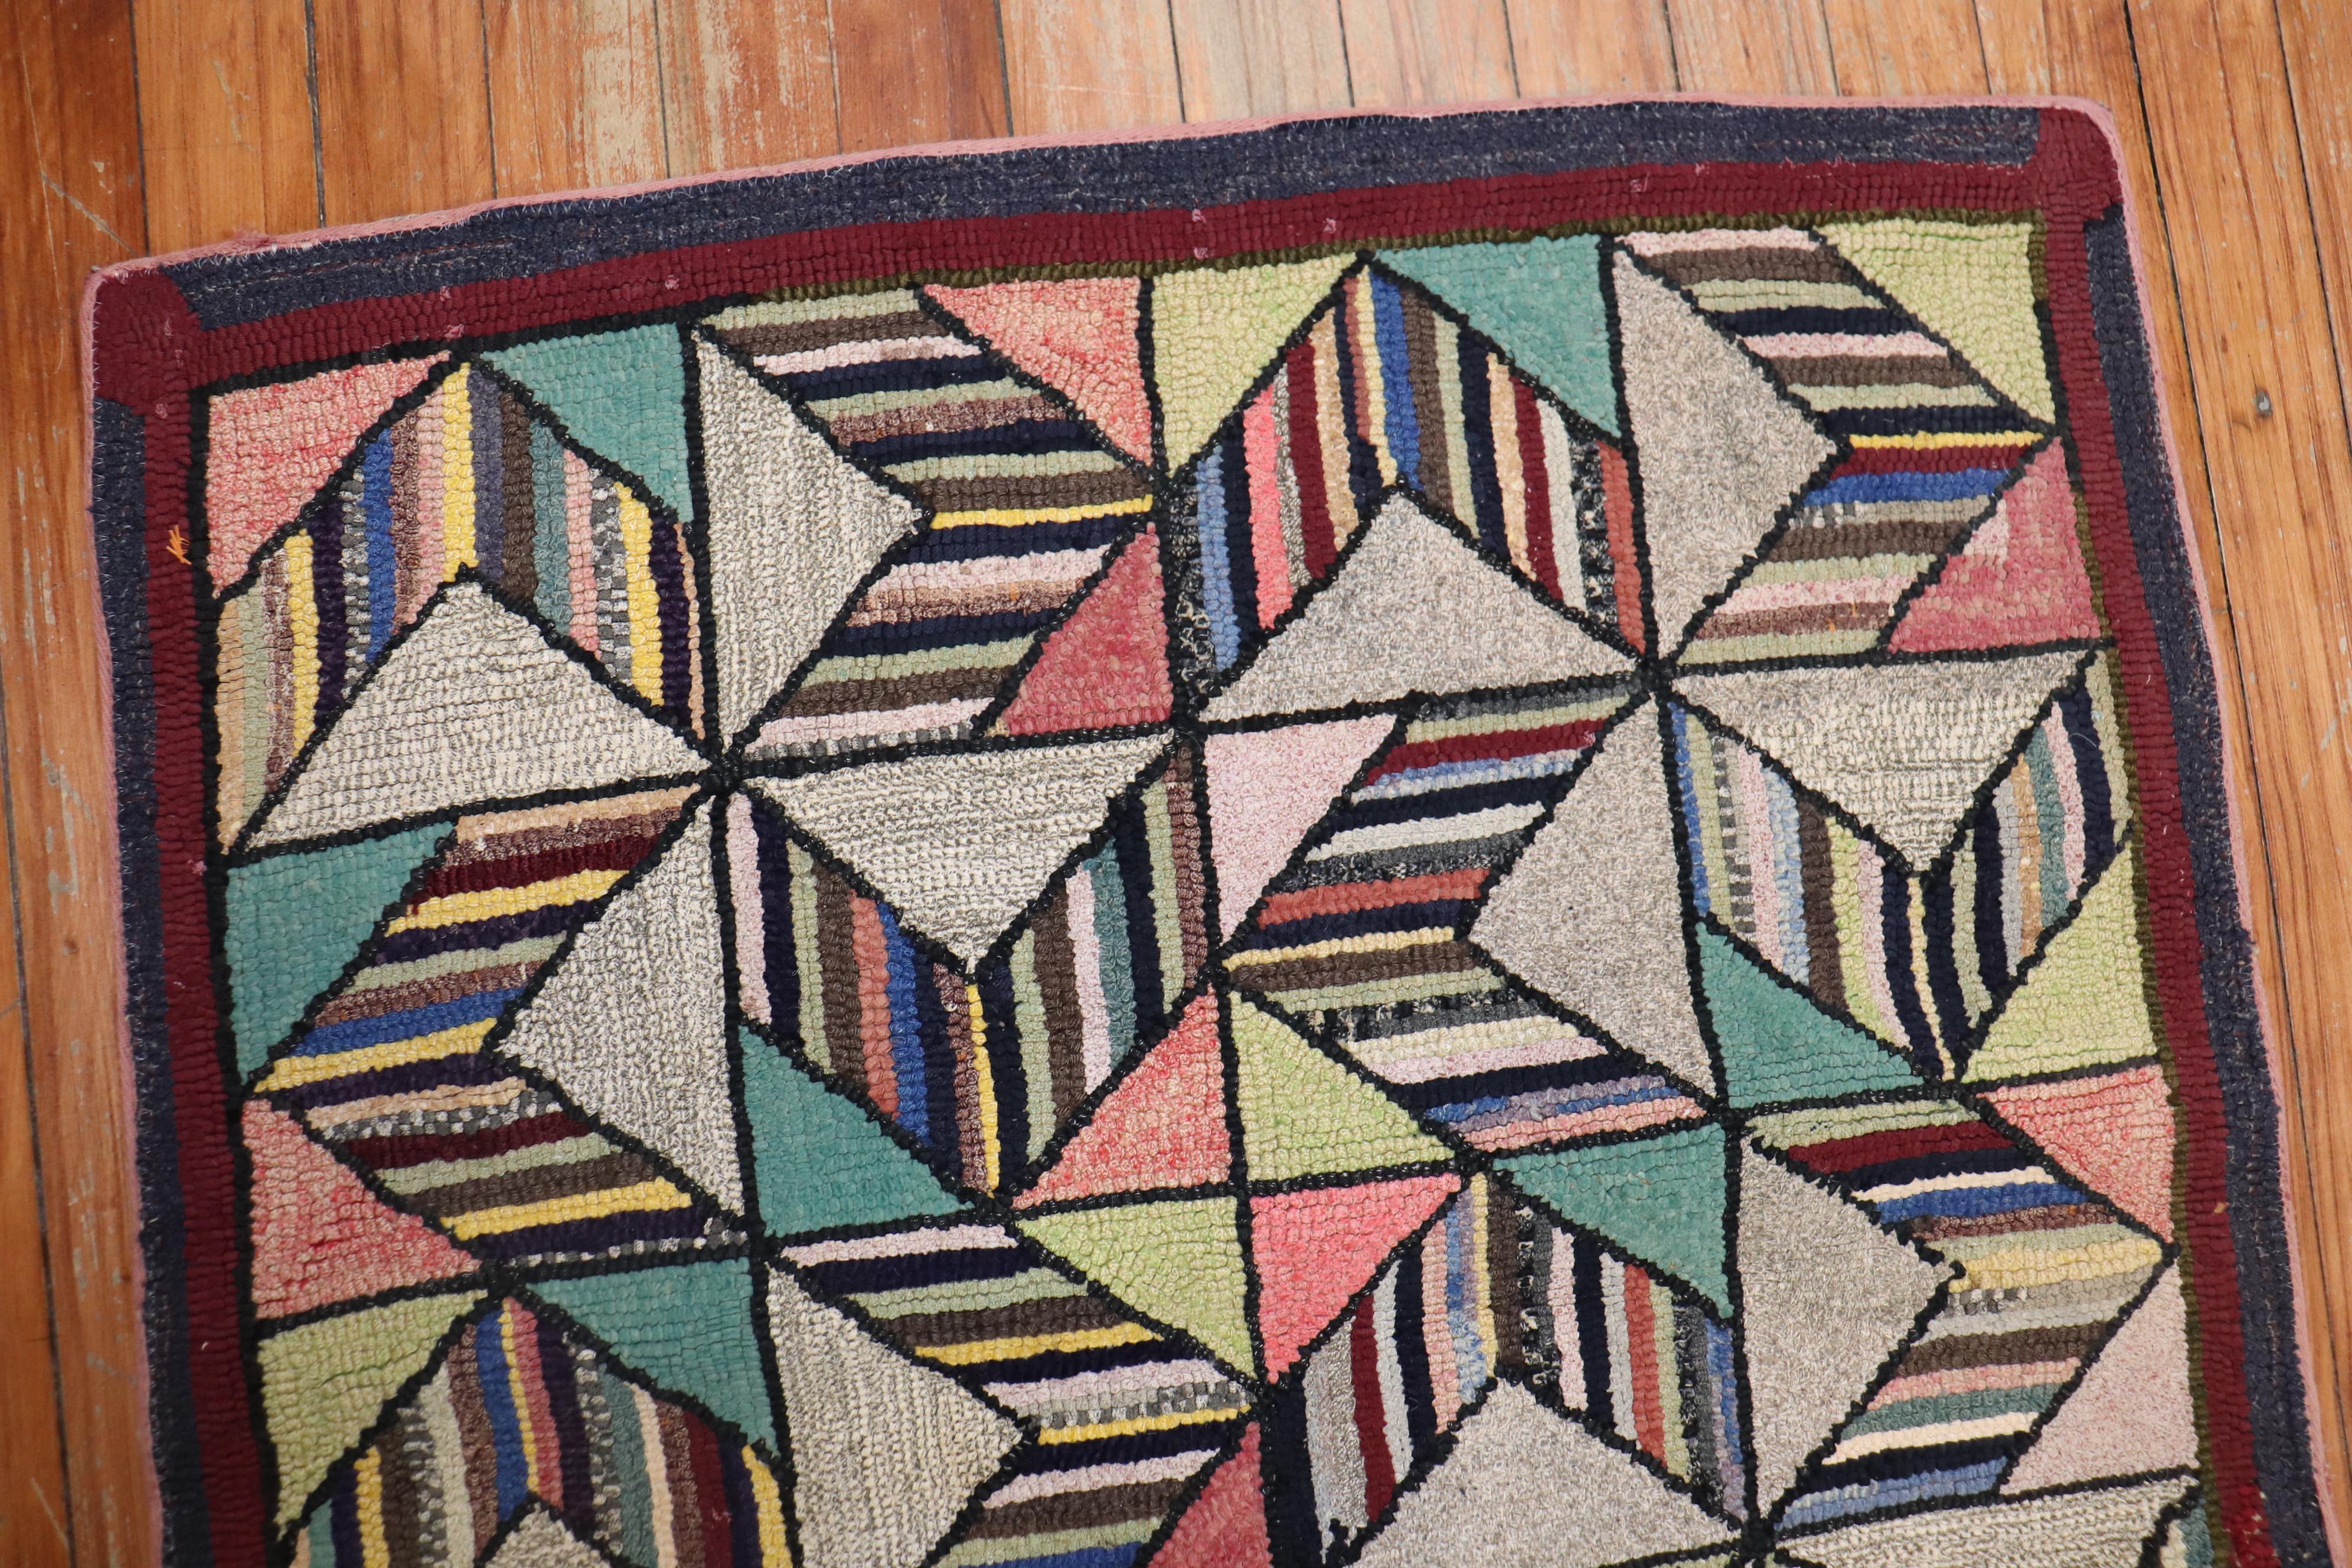 Ein handgefertigter, dekorativer amerikanischer Hakenteppich aus der Mitte des 20. Jahrhunderts mit einem schwindelerregenden geometrischen Muster

Maße: 2'4